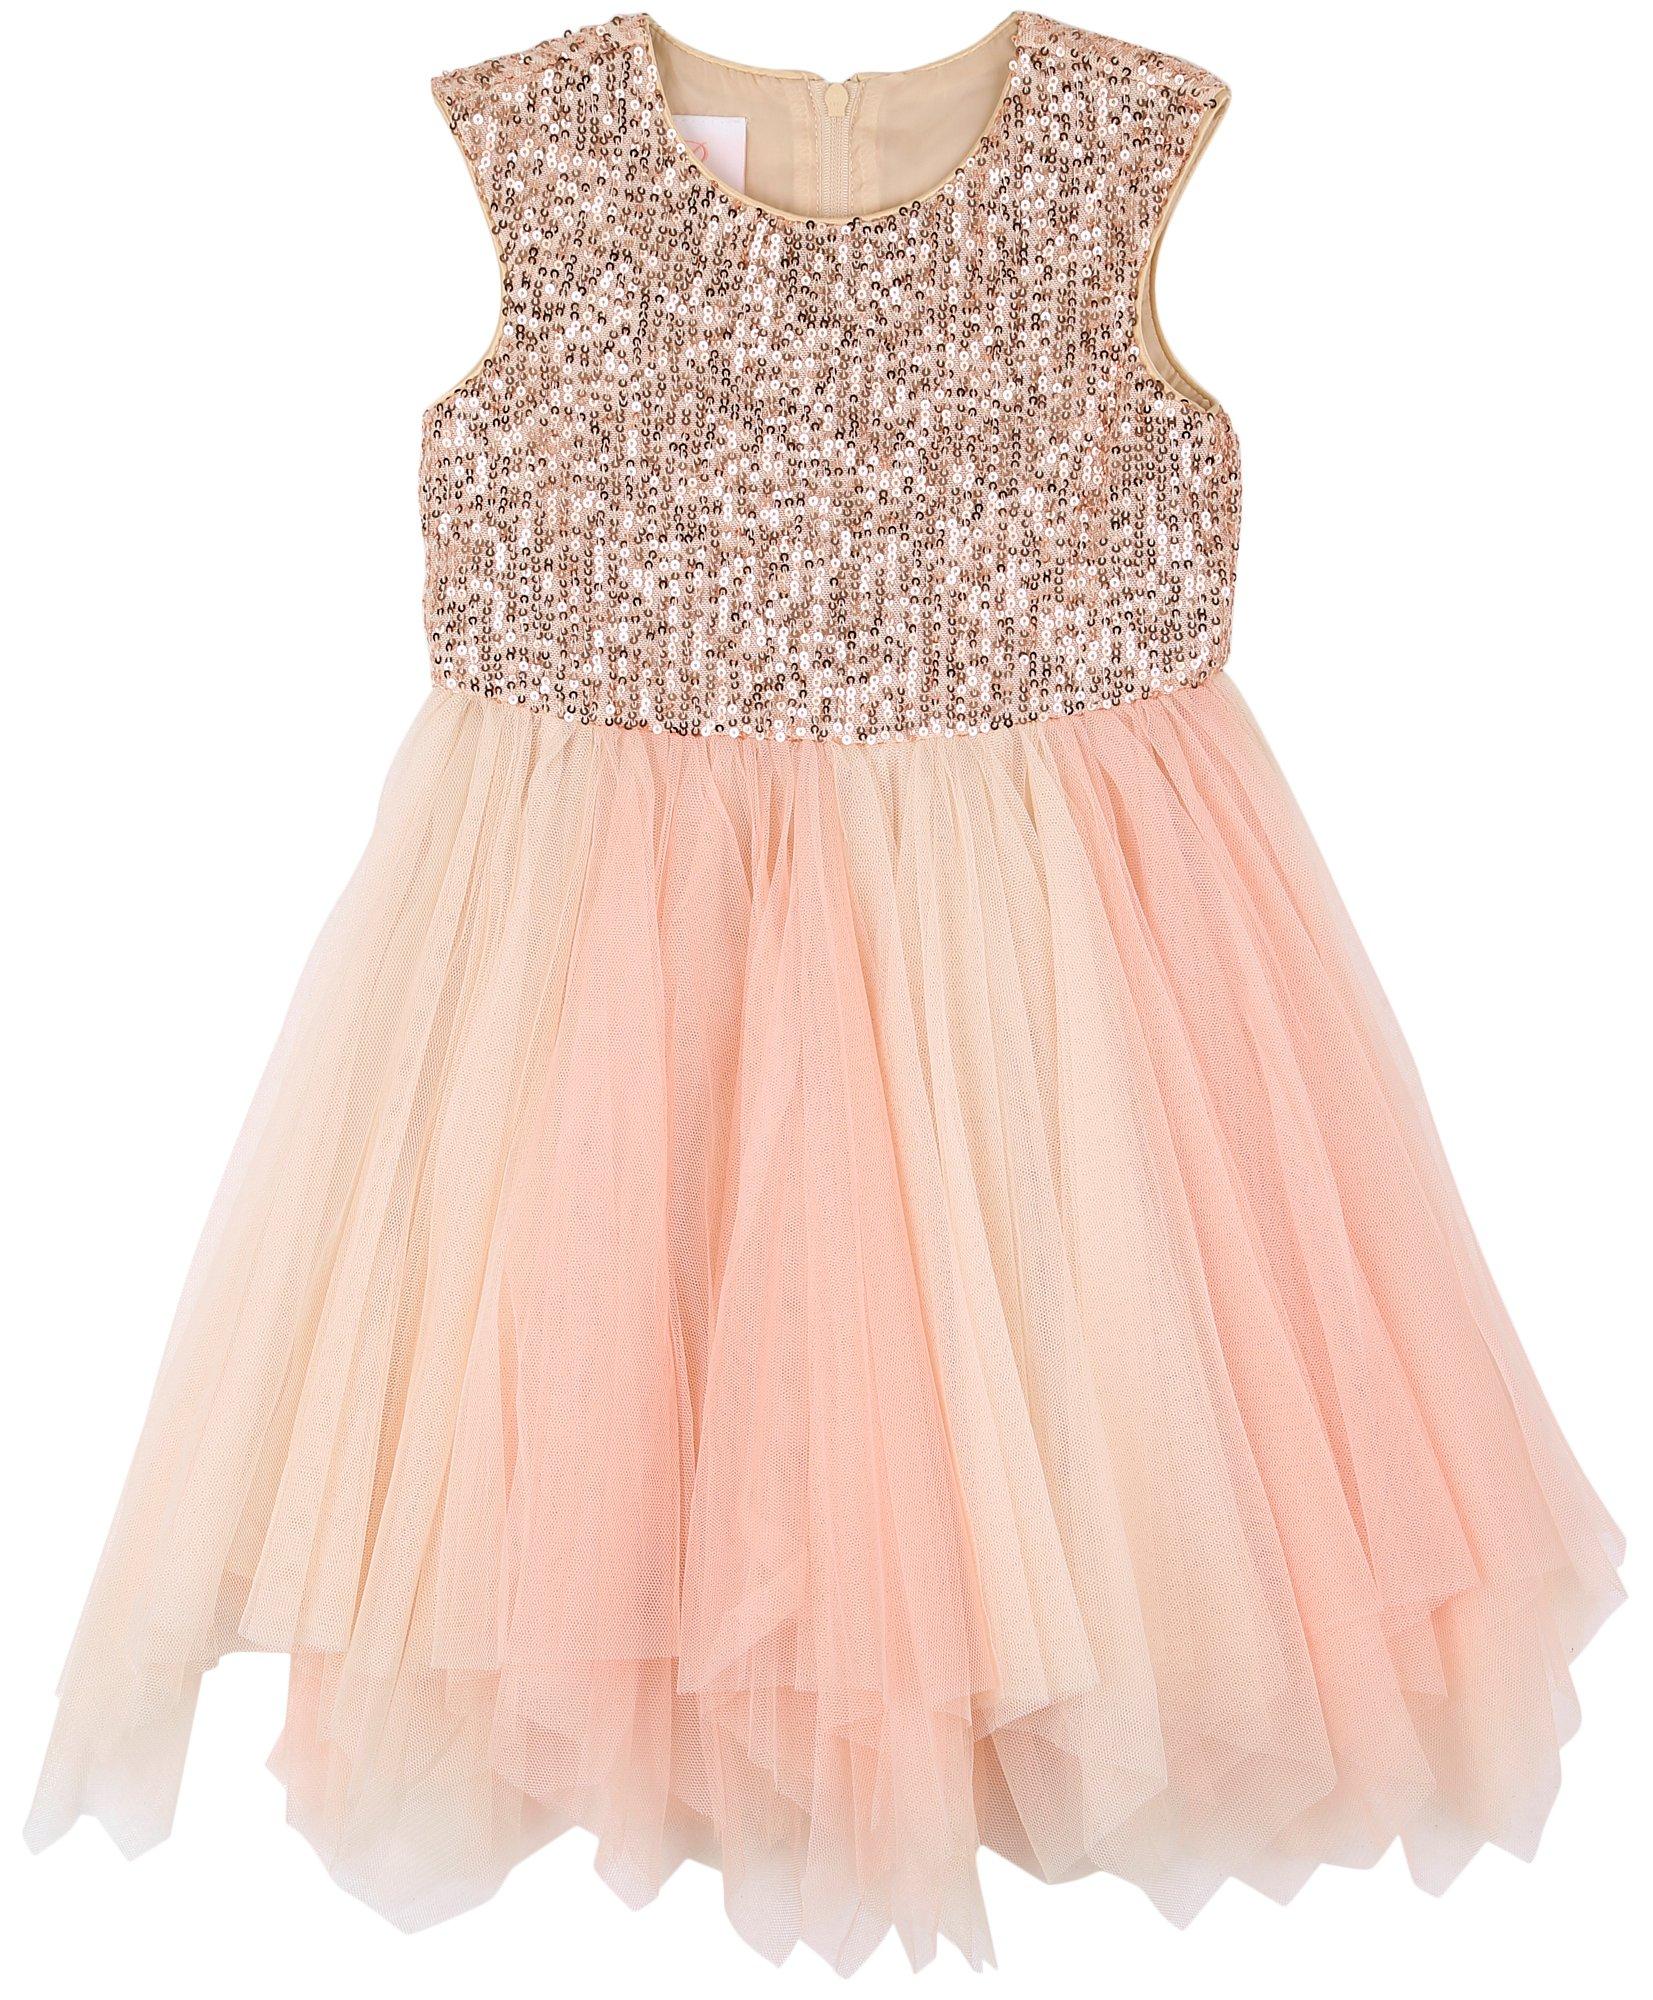 Toddler Girls Sleeveless Sequin Soft Skirt Dress